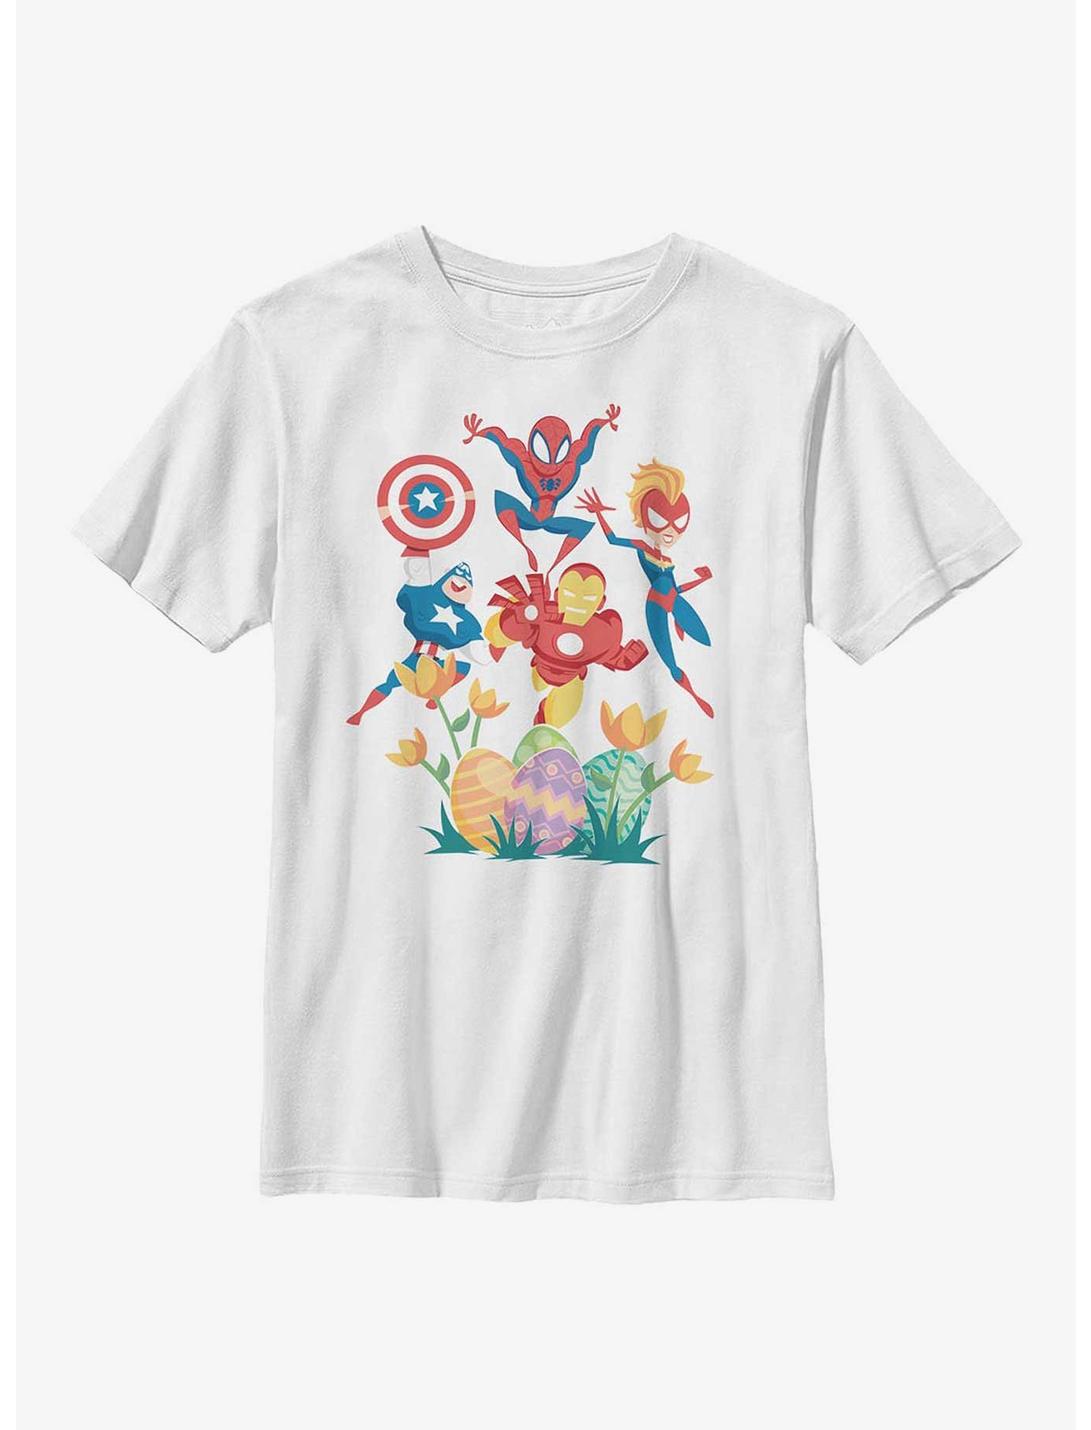 Marvel Avengers Captain Power Youth T-Shirt, WHITE, hi-res